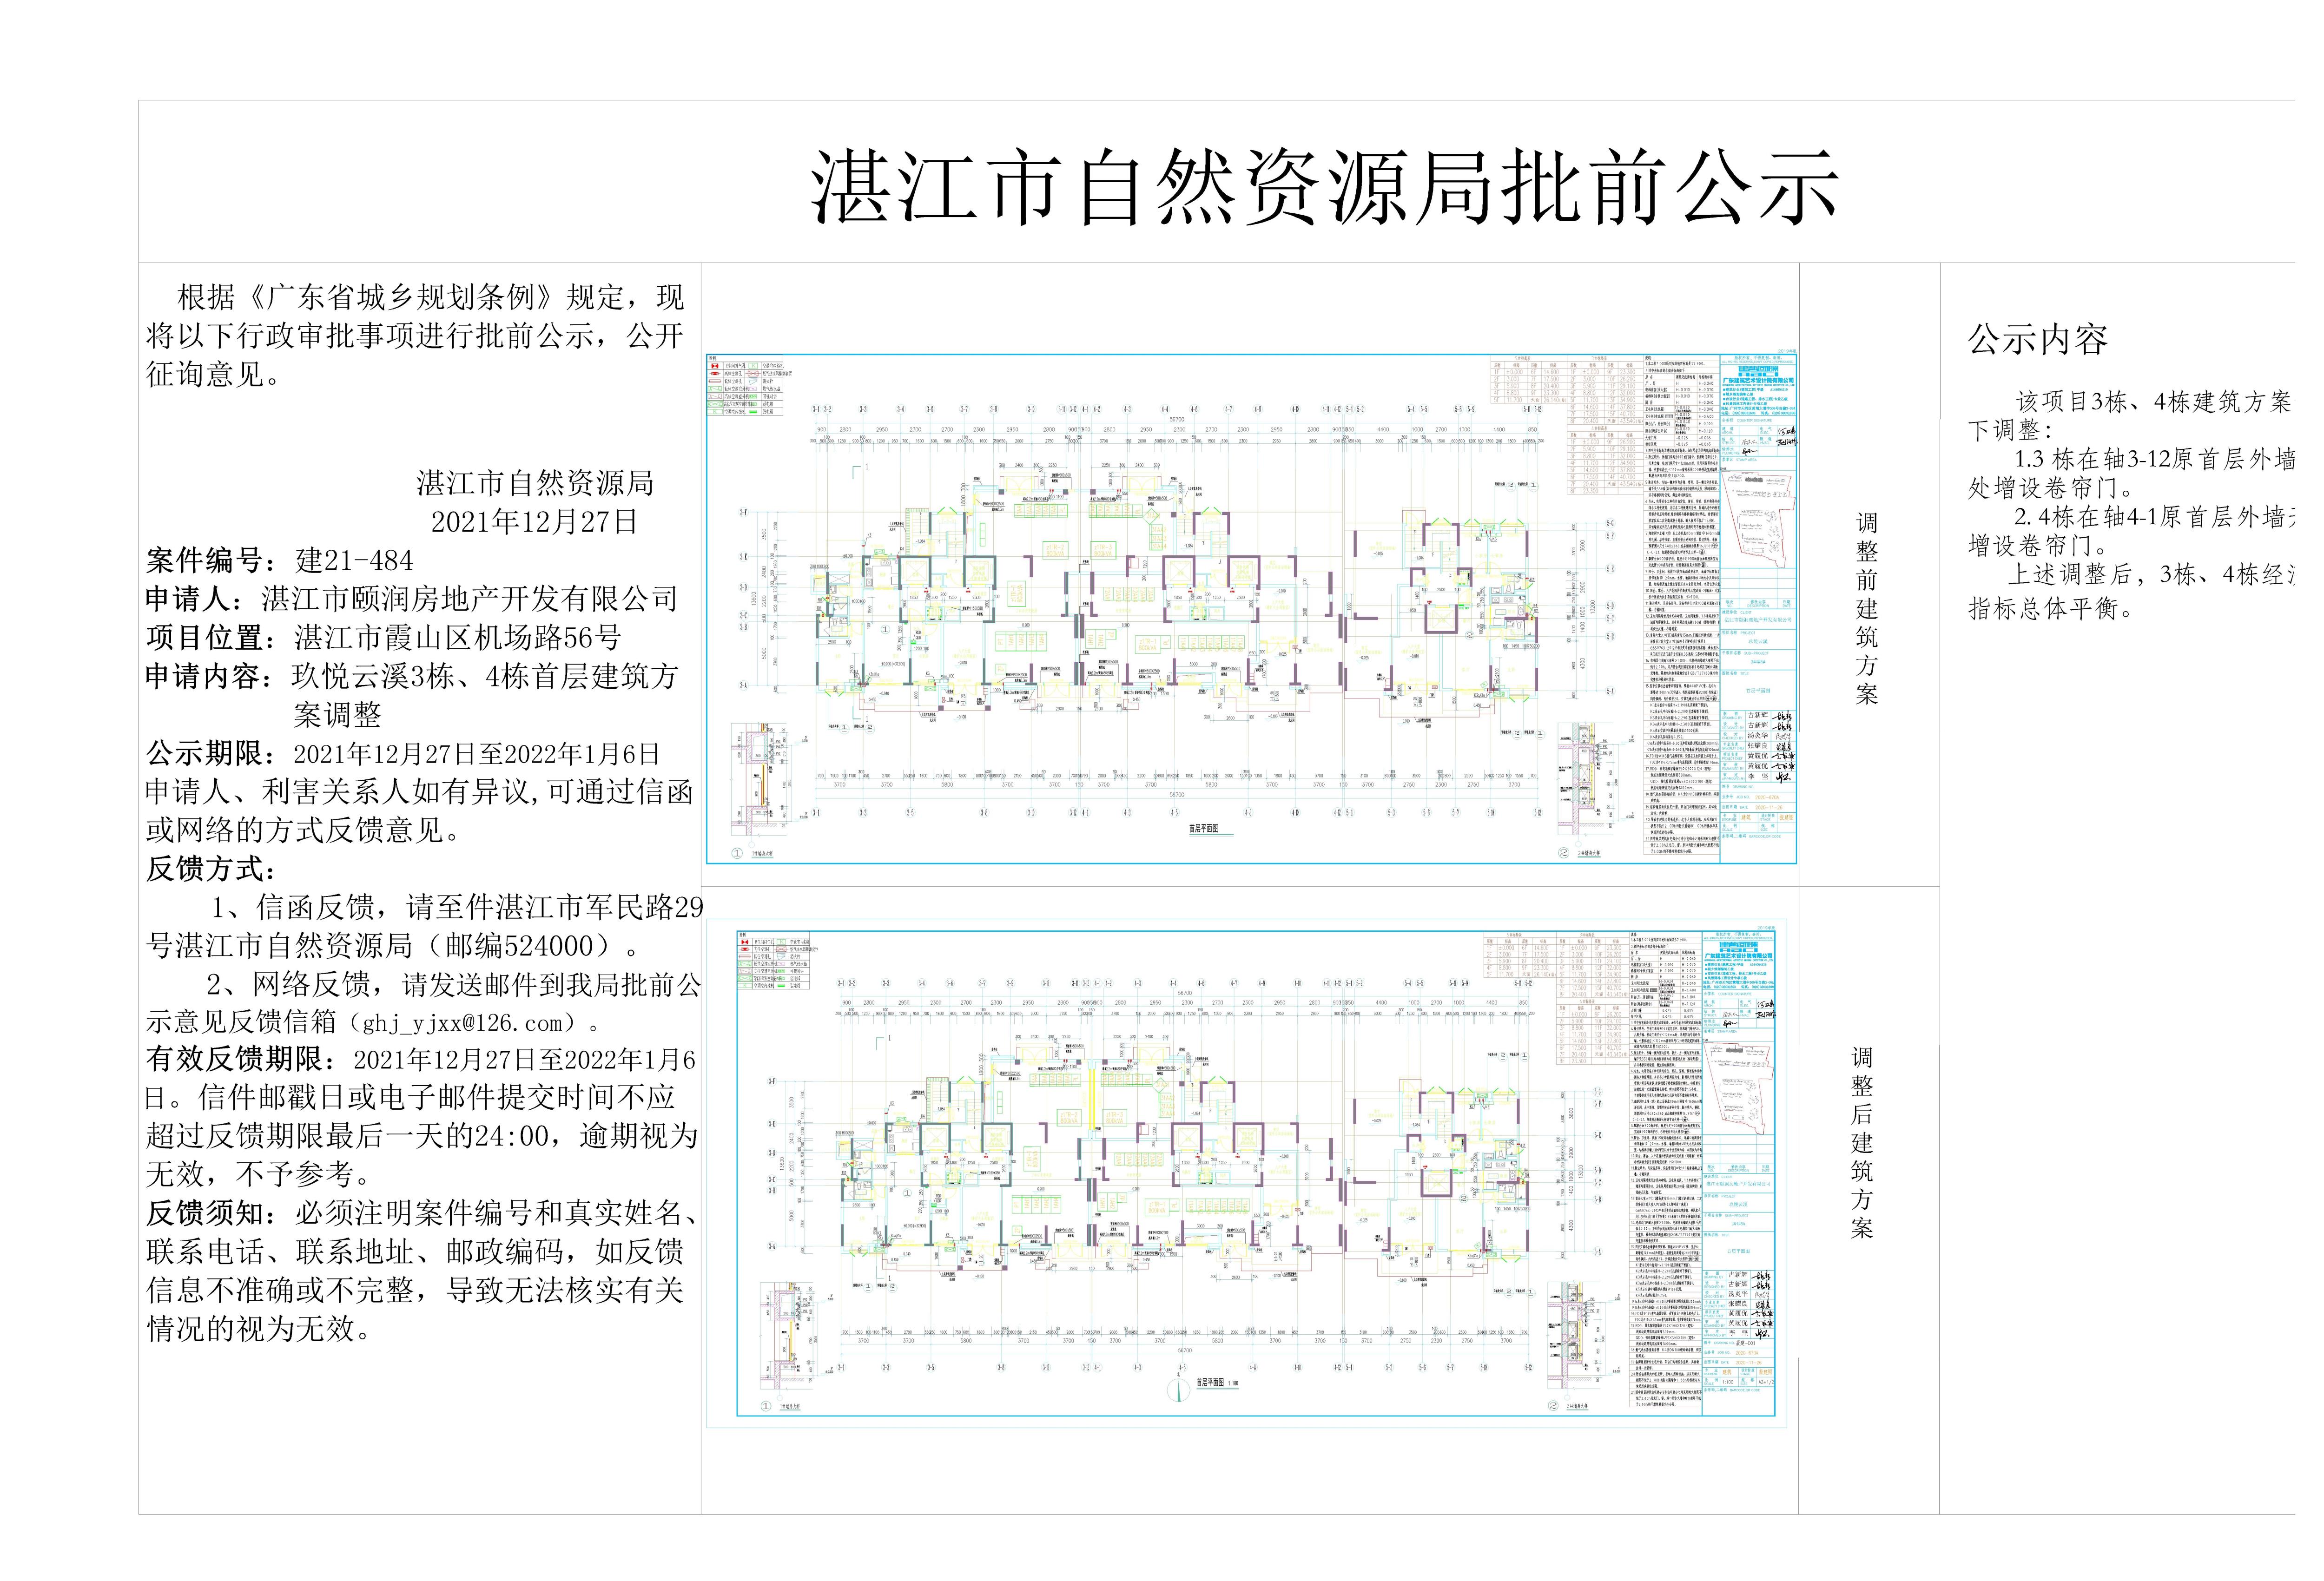 玖悦云溪3栋、4栋建筑方案调整批前公示_t3-Model - 副本.jpg